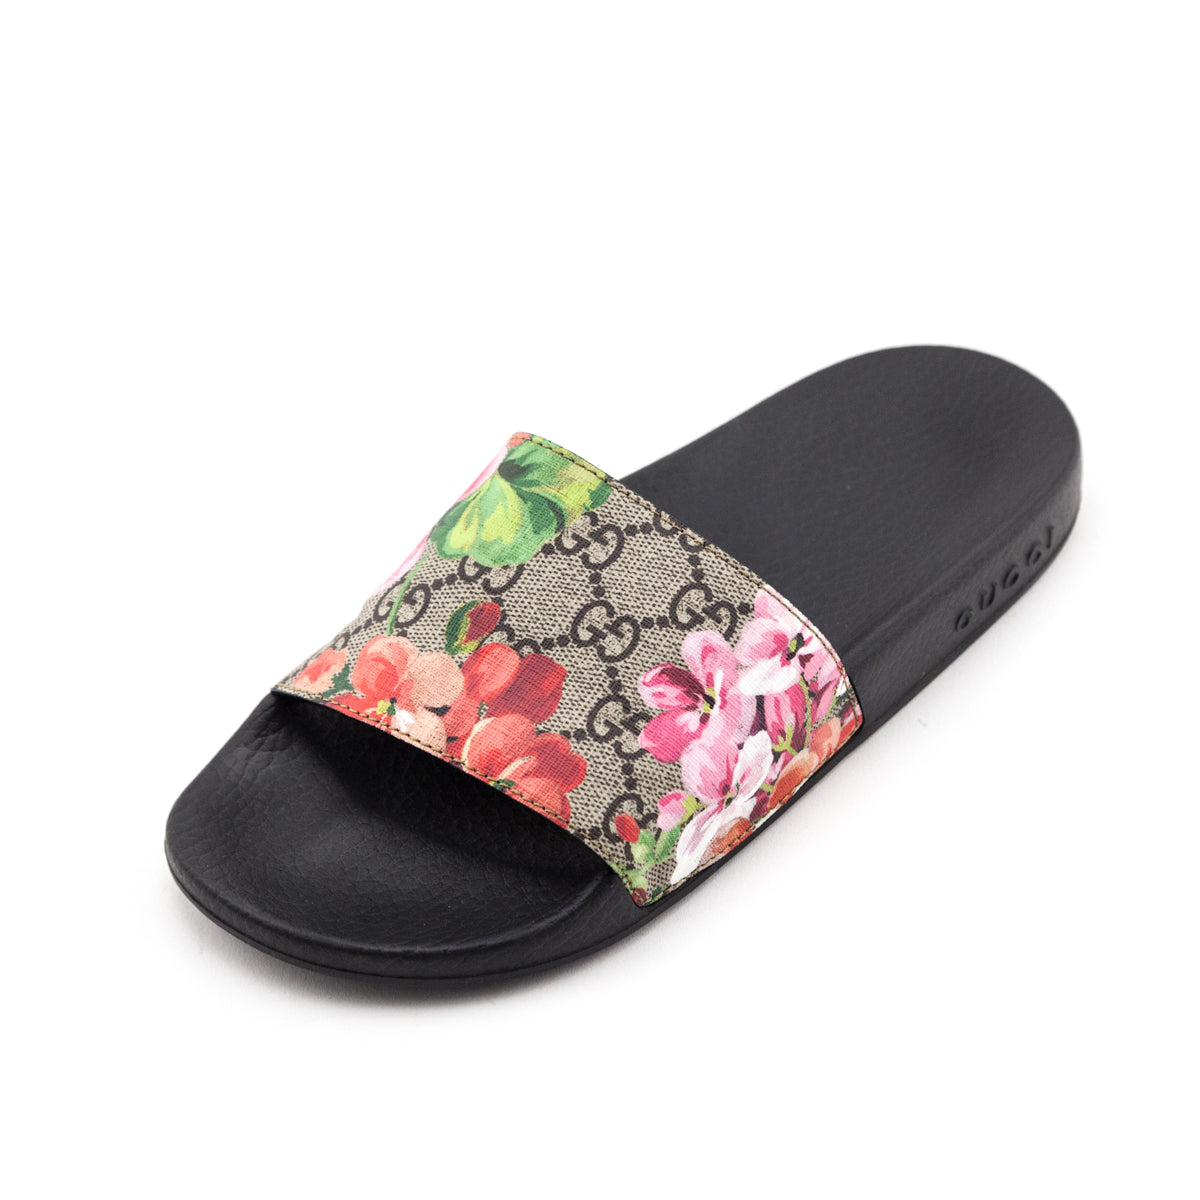 Gucci Bloom Slides/ Should you buy???🌷🌷 